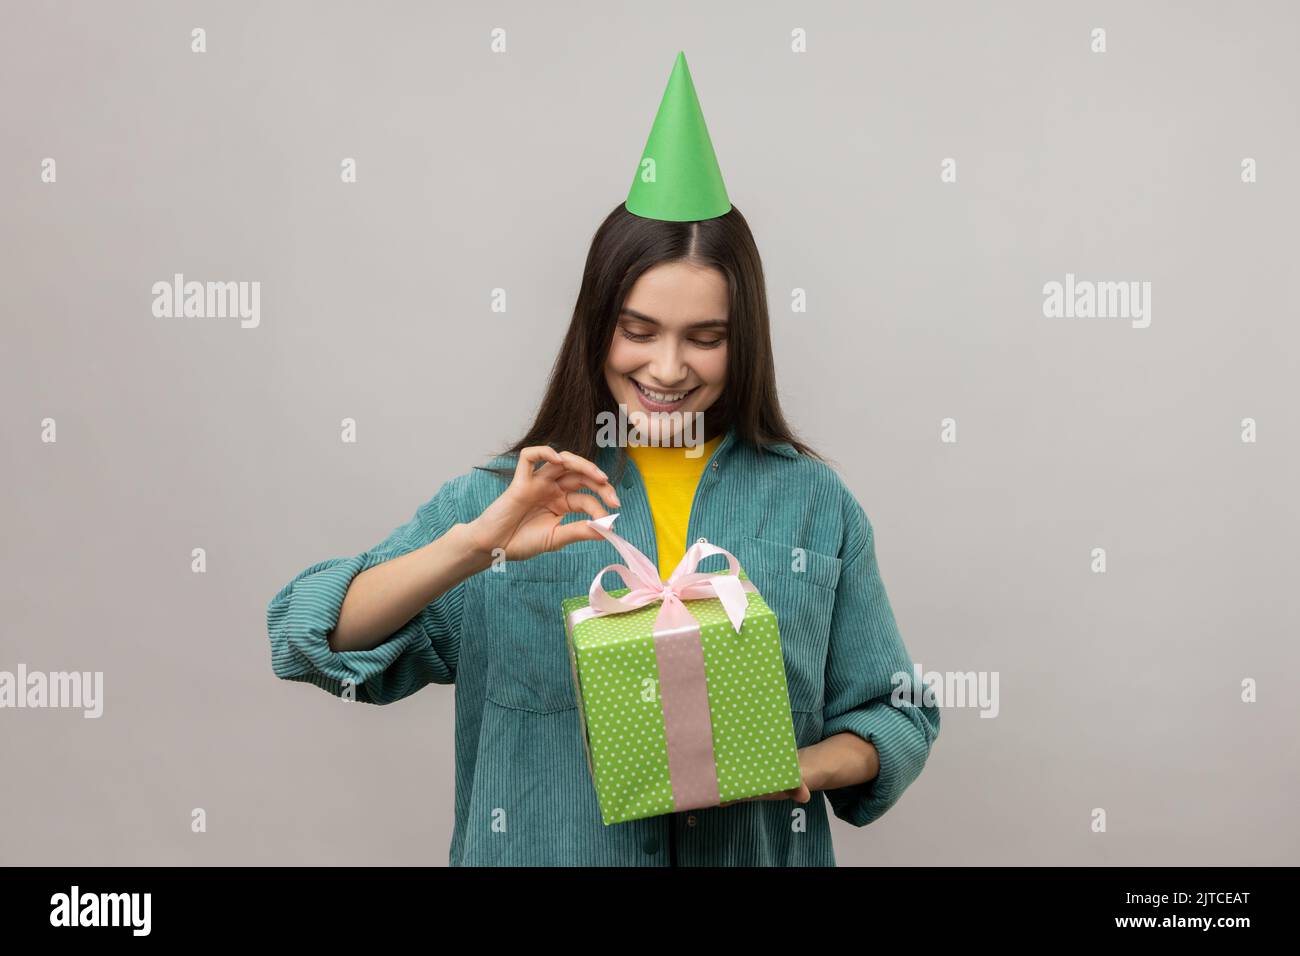 Porträt von lächelnden Frau Partei Kegel Hut Eröffnung Geburtstagsgeschenk auf Party-Feier, ziehen Band, glücklich, tragen lässigen Stil Jacke. Innenaufnahme des Studios isoliert auf grauem Hintergrund. Stockfoto